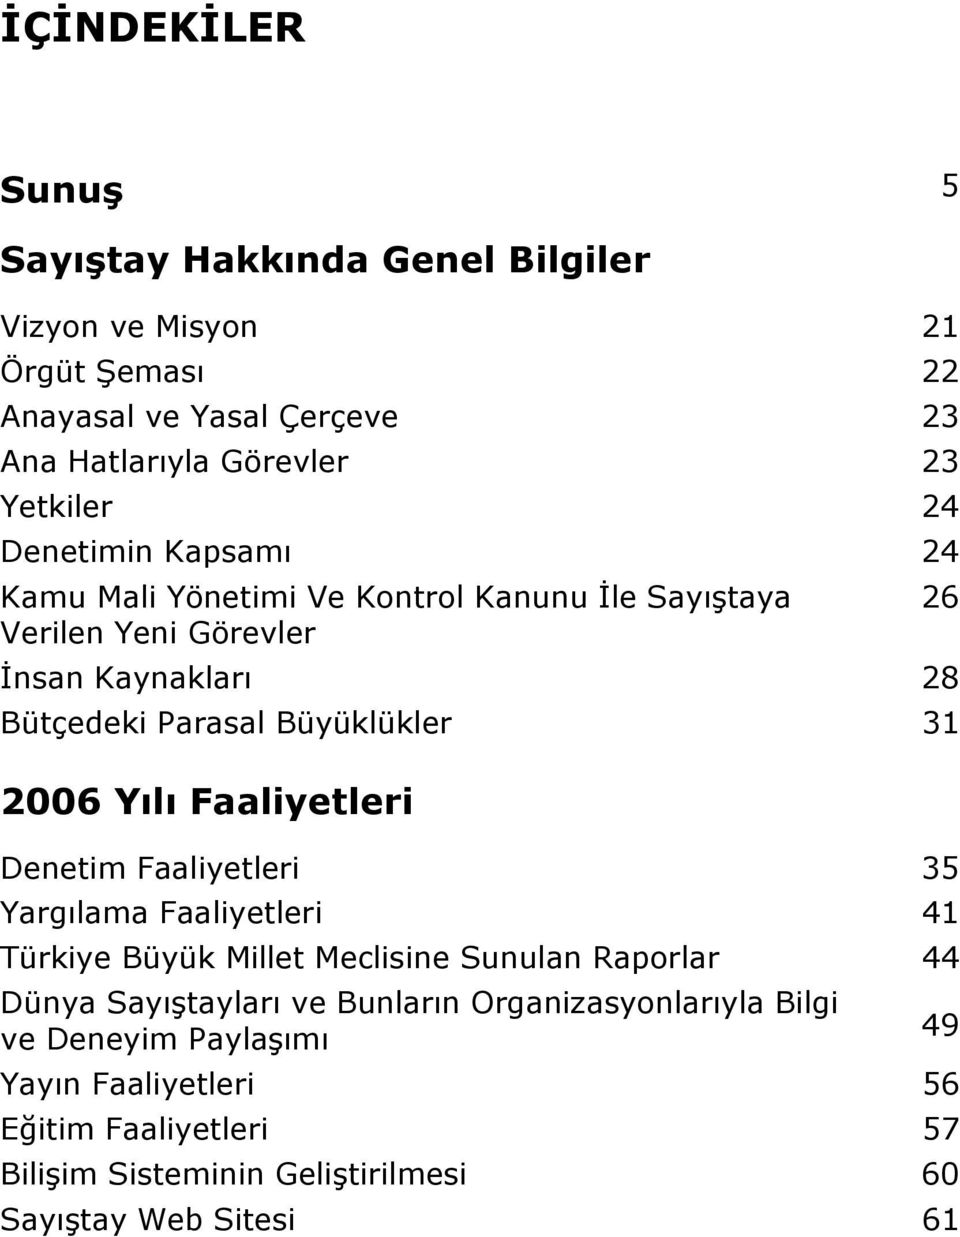 2006 Yılı Faaliyetleri Denetim Faaliyetleri 35 Yargılama Faaliyetleri 41 Türkiye Büyük Millet Meclisine Sunulan Raporlar 44 Dünya Sayıştayları ve